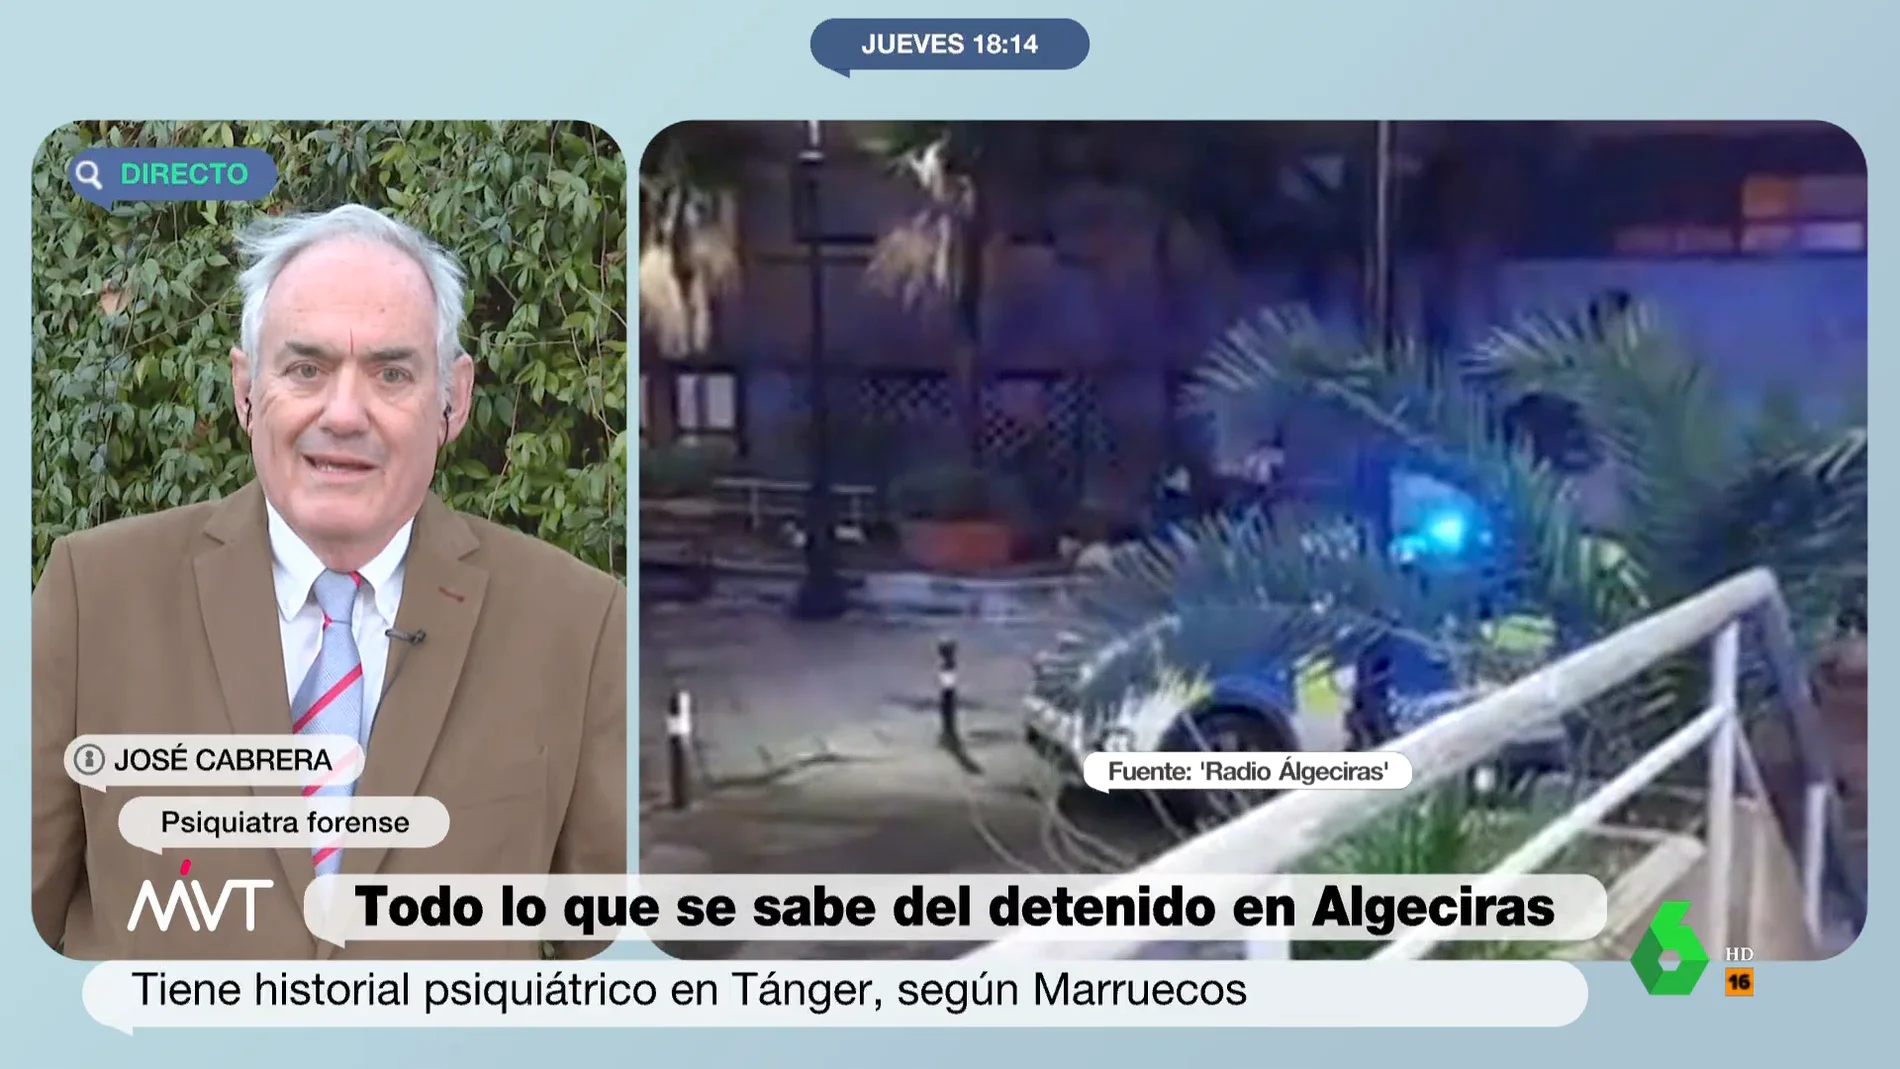 El análisis del doctor Cabrera sobre el atacante de Algeciras: "La conducta del sujeto es psicótica"